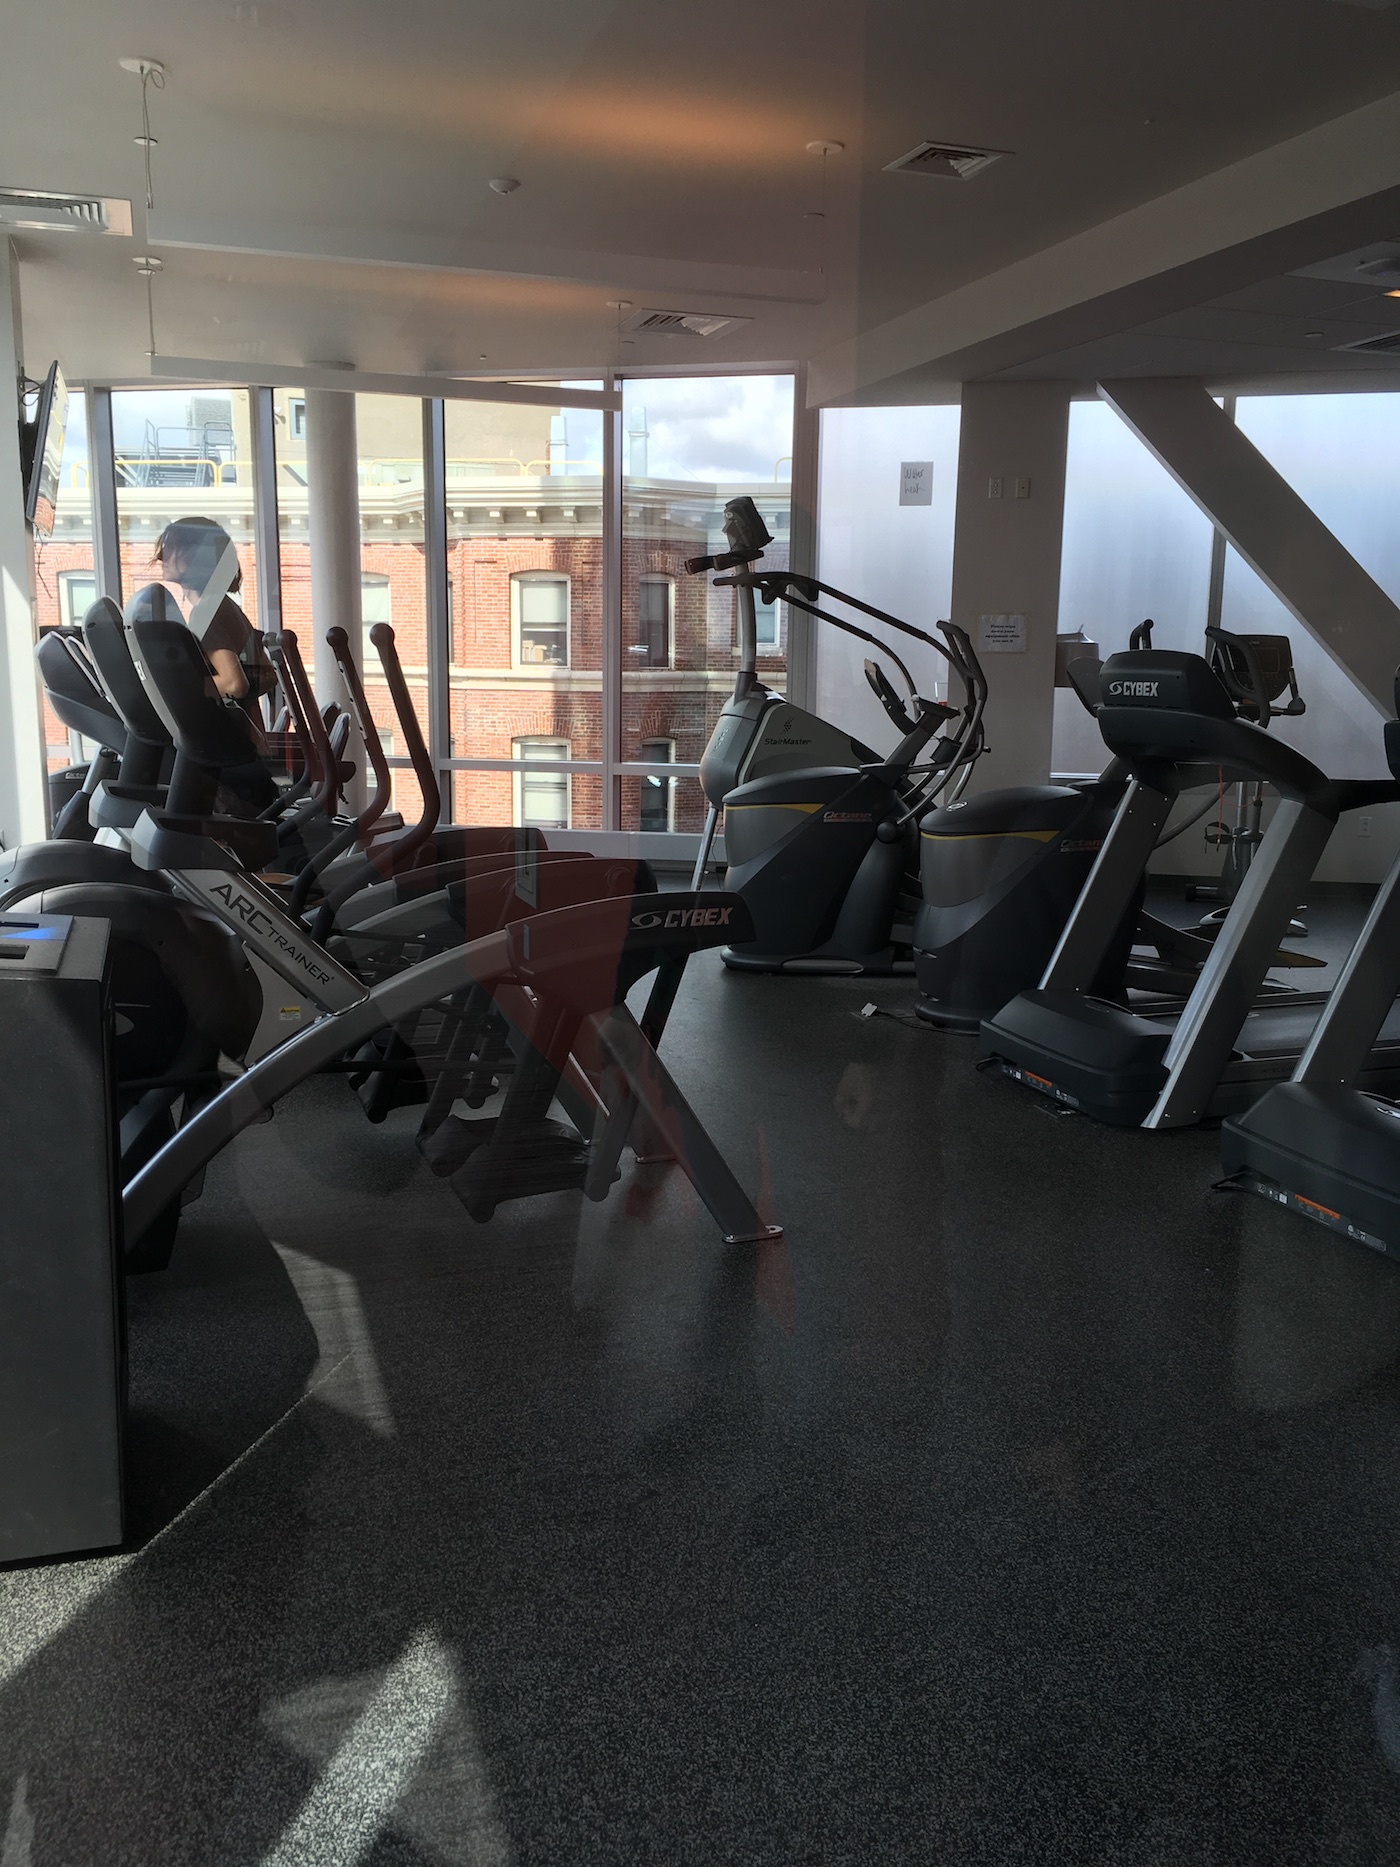 berklee-fitness-center.jpg